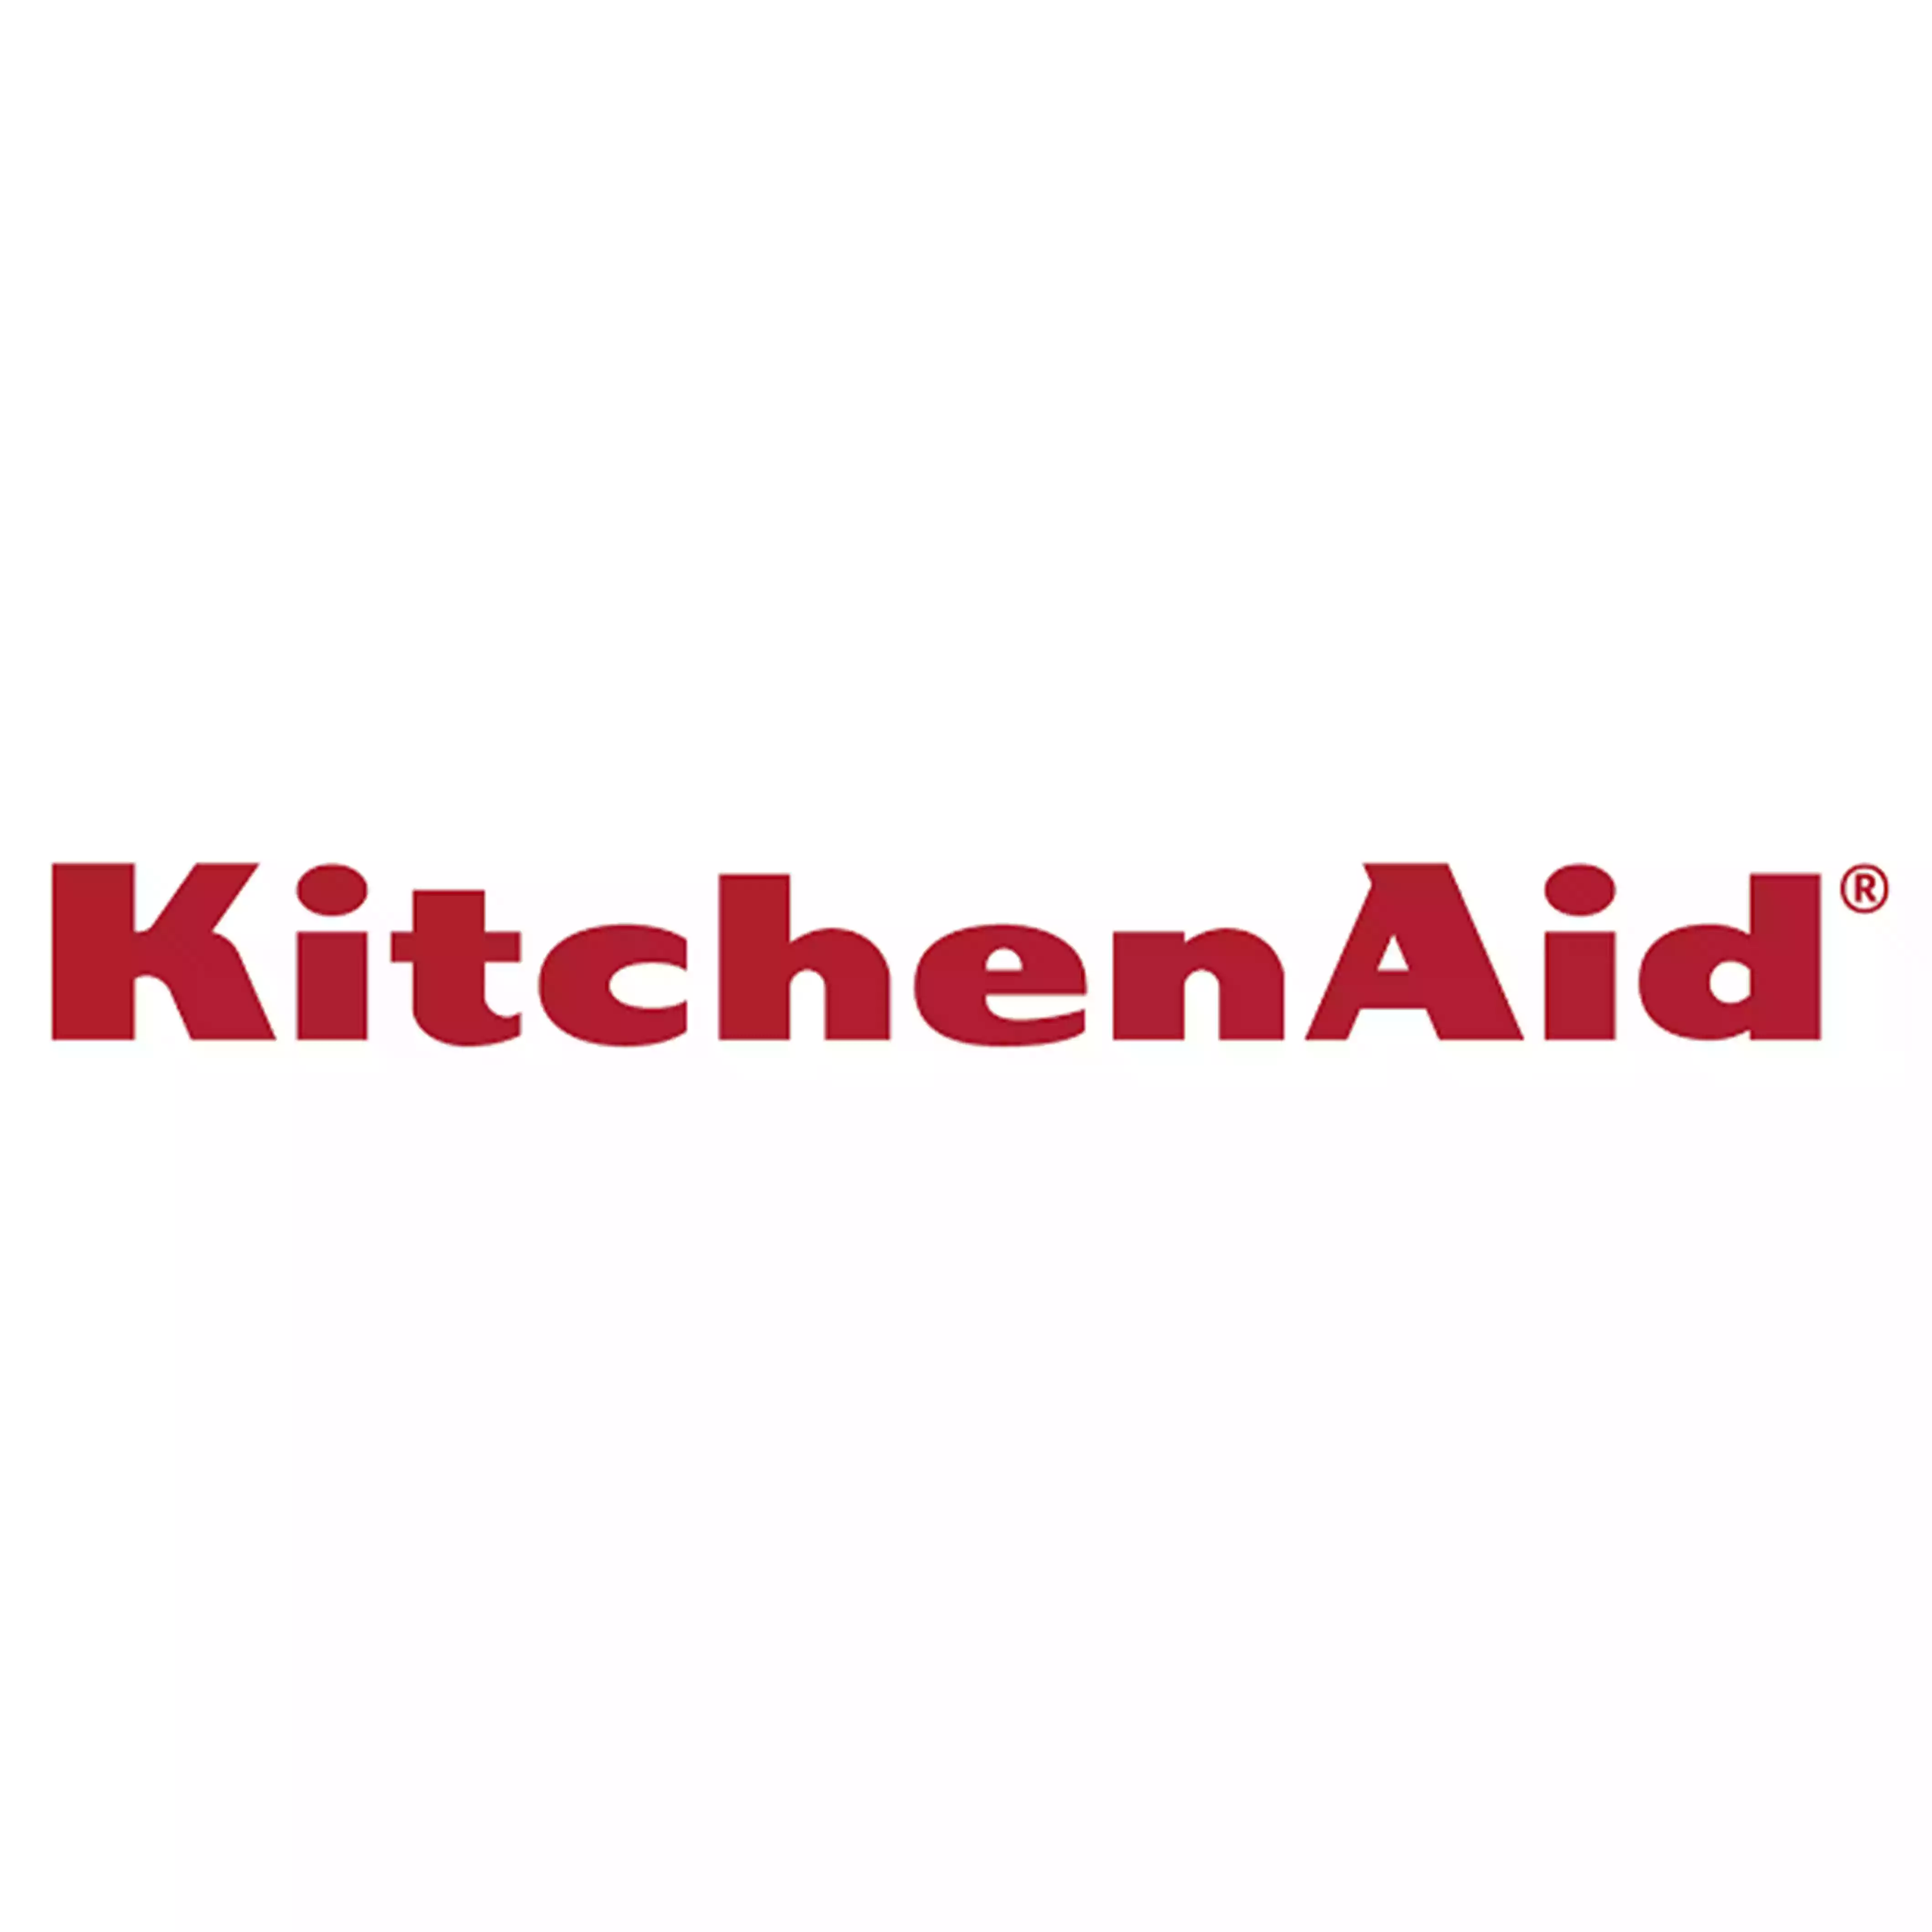 KitchenAid coupon codes